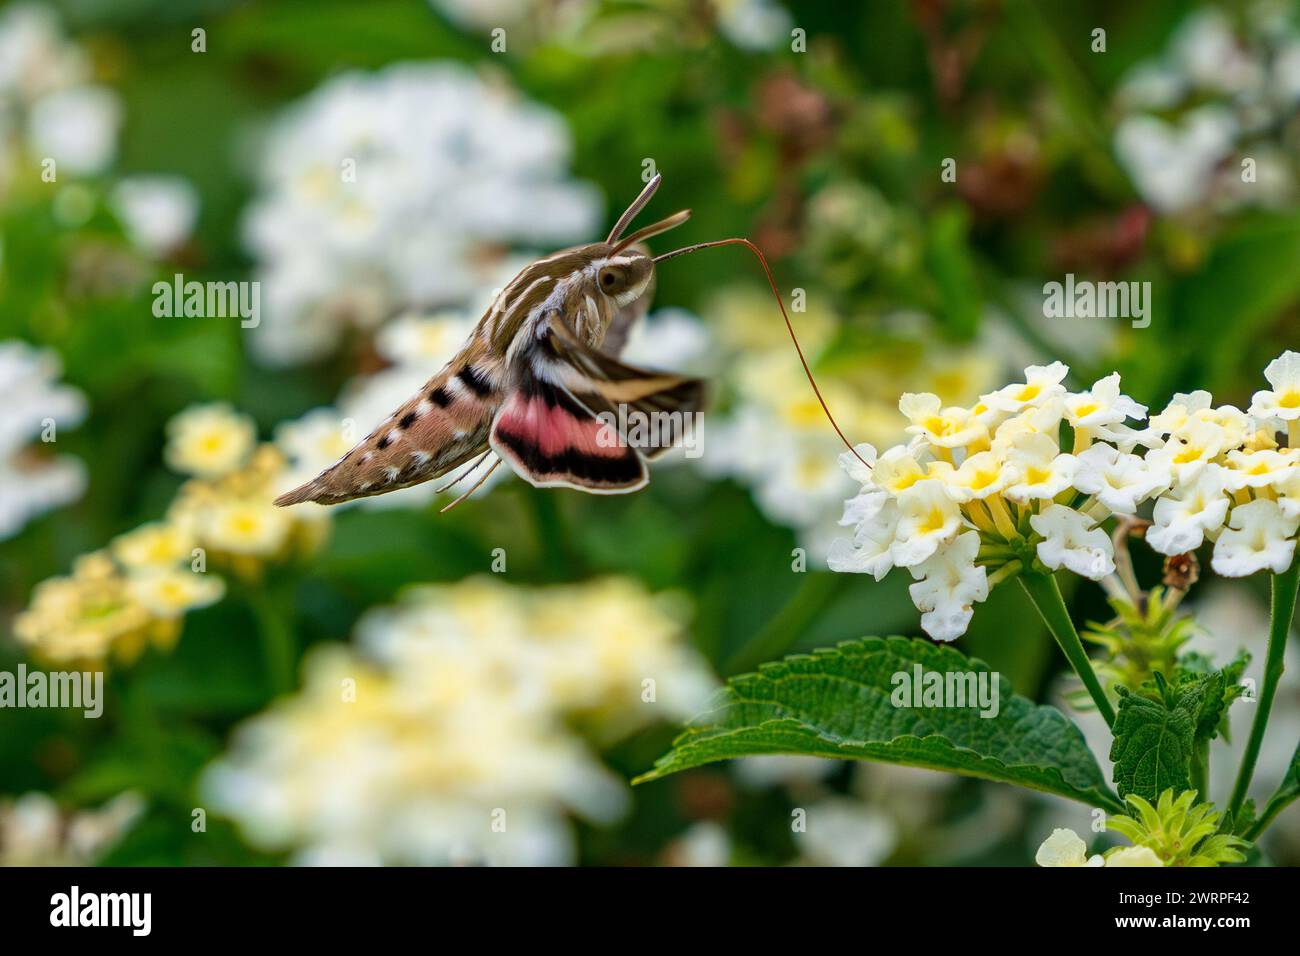 Nahaufnahme eines weiß-gesäumten Sphinx-Motten mit langer Zunge oder Vorfuß in einer weißen Lantana-Blüte. Stockfoto